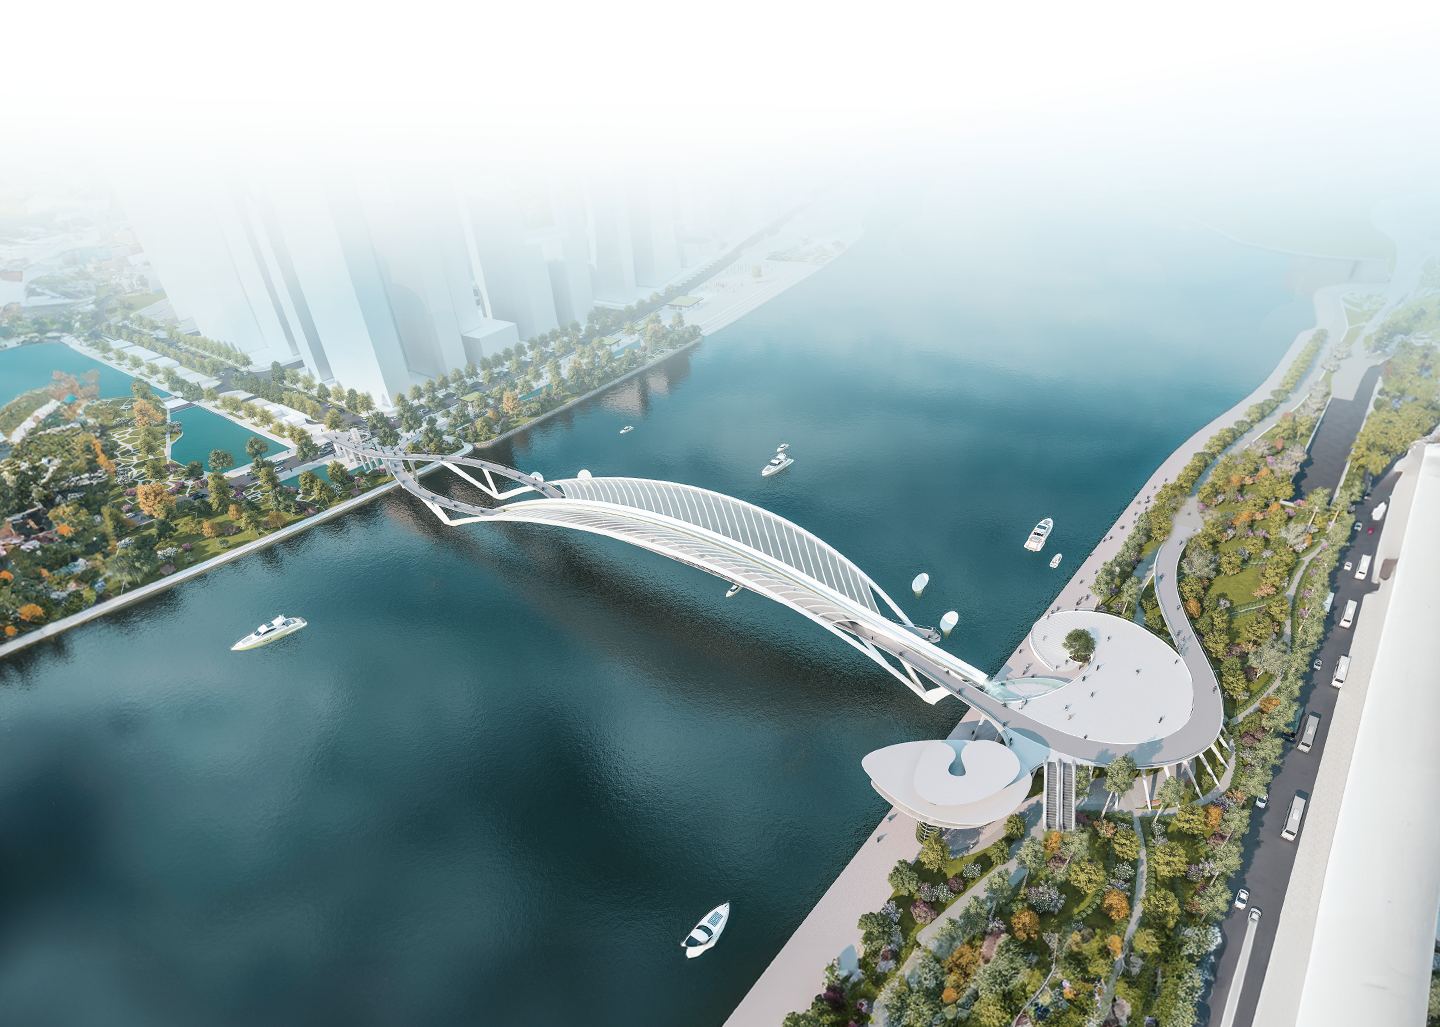 Tài trợ xây cầu đi bộ bắc qua sông Sài Gòn - Kiến tạo biểu tượng mới của Tp. Hồ Chí Minh